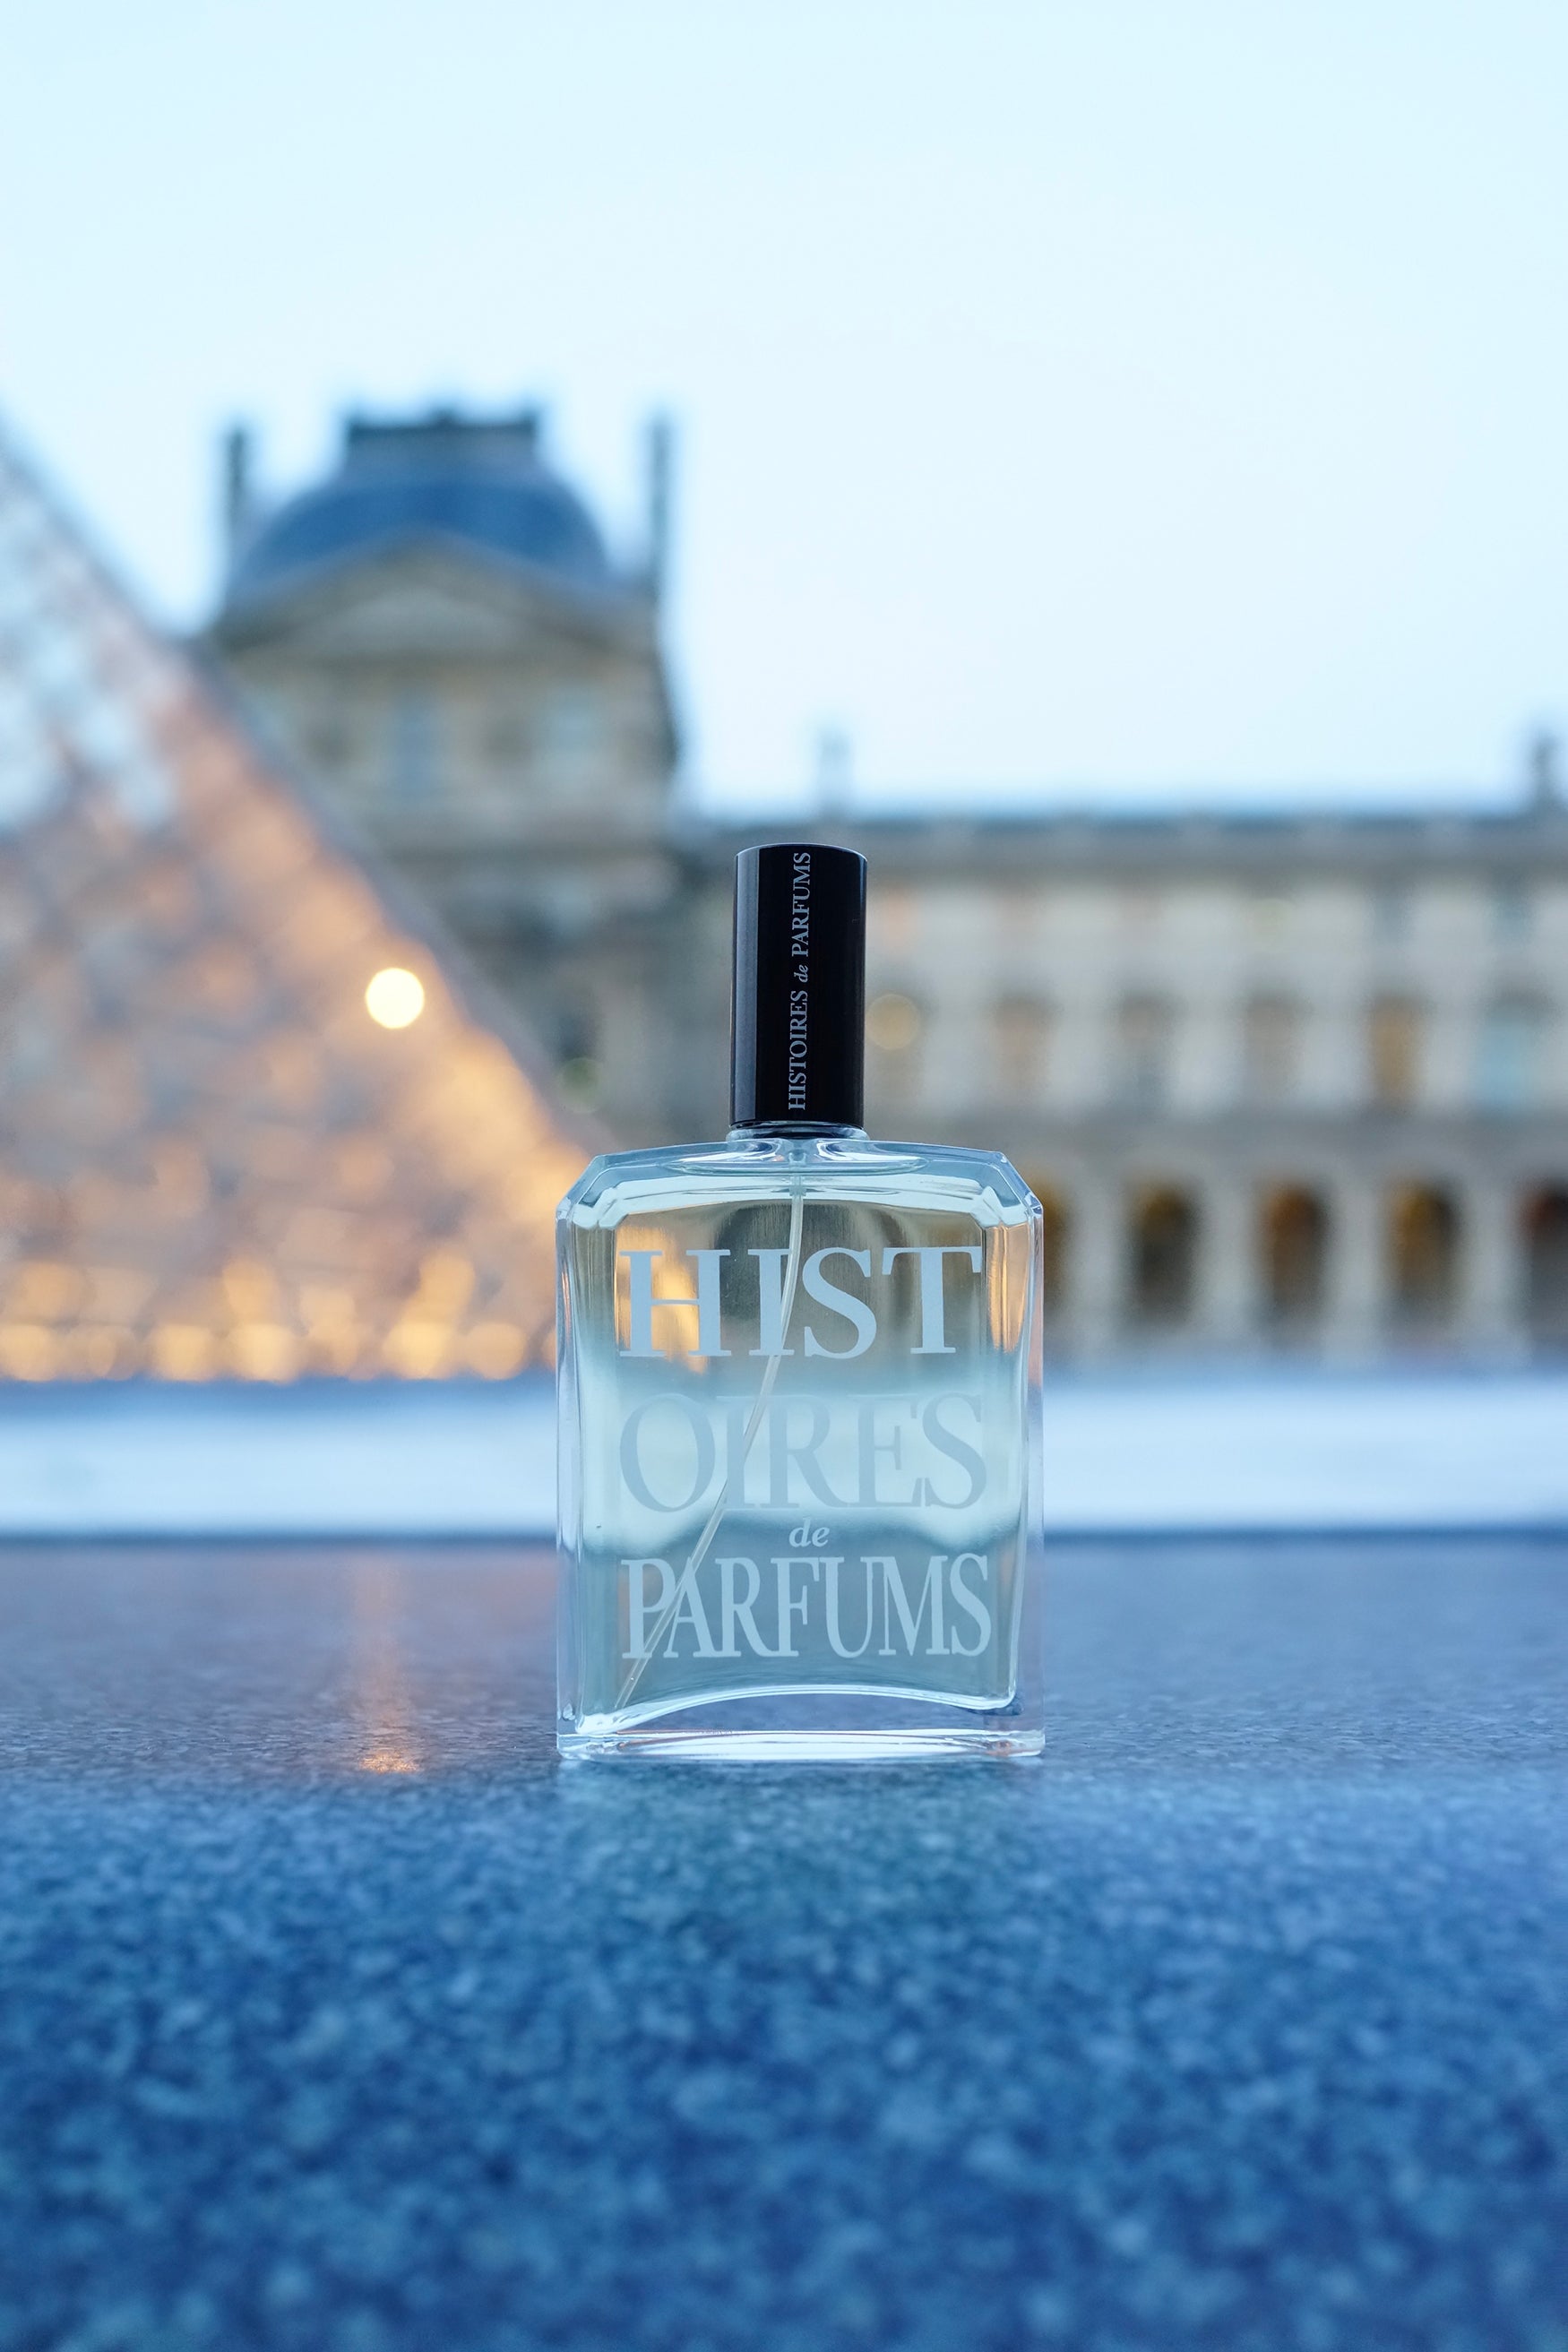 Le Louvres - Histoires de Parfums